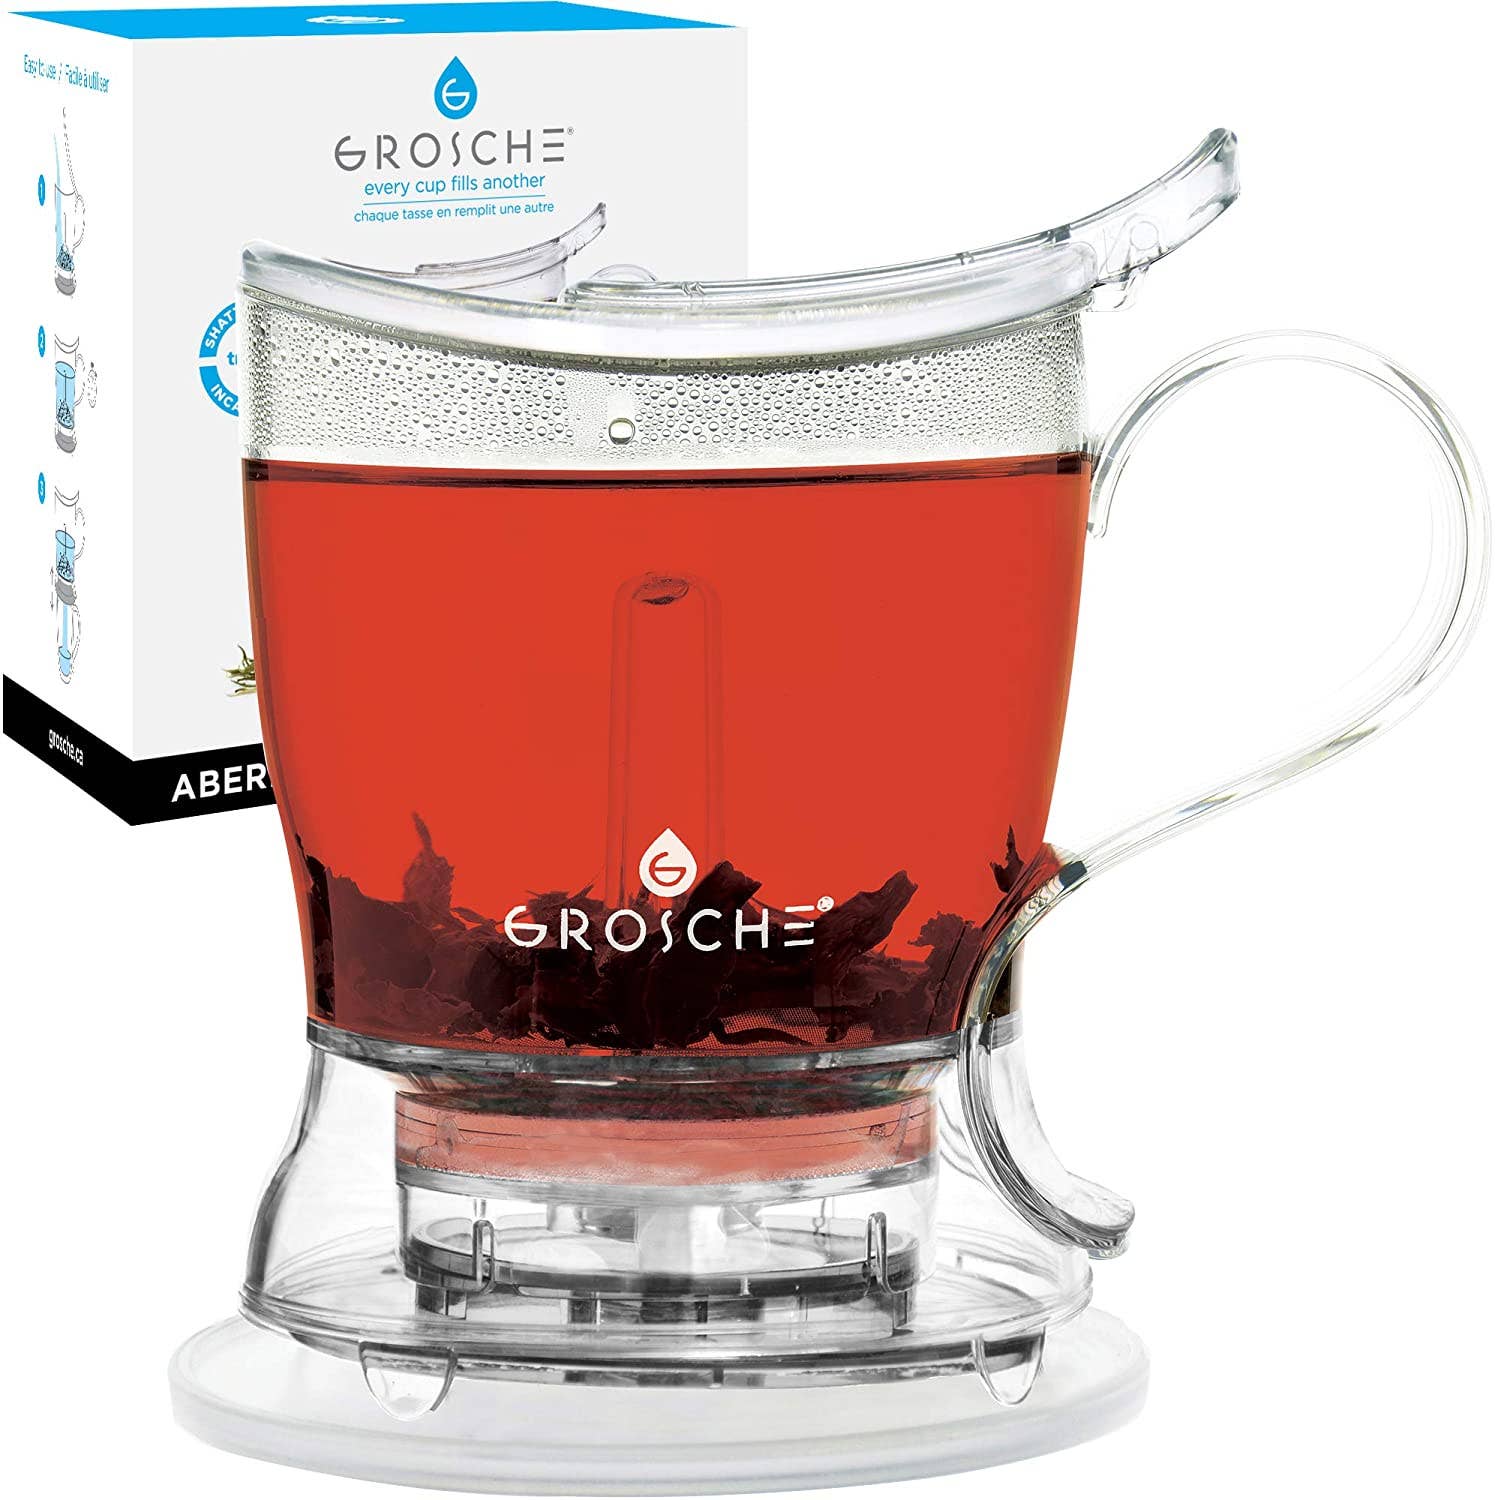 GROSCHE ABERDEEN Smart Tea Maker, Tea Steeper - Clear